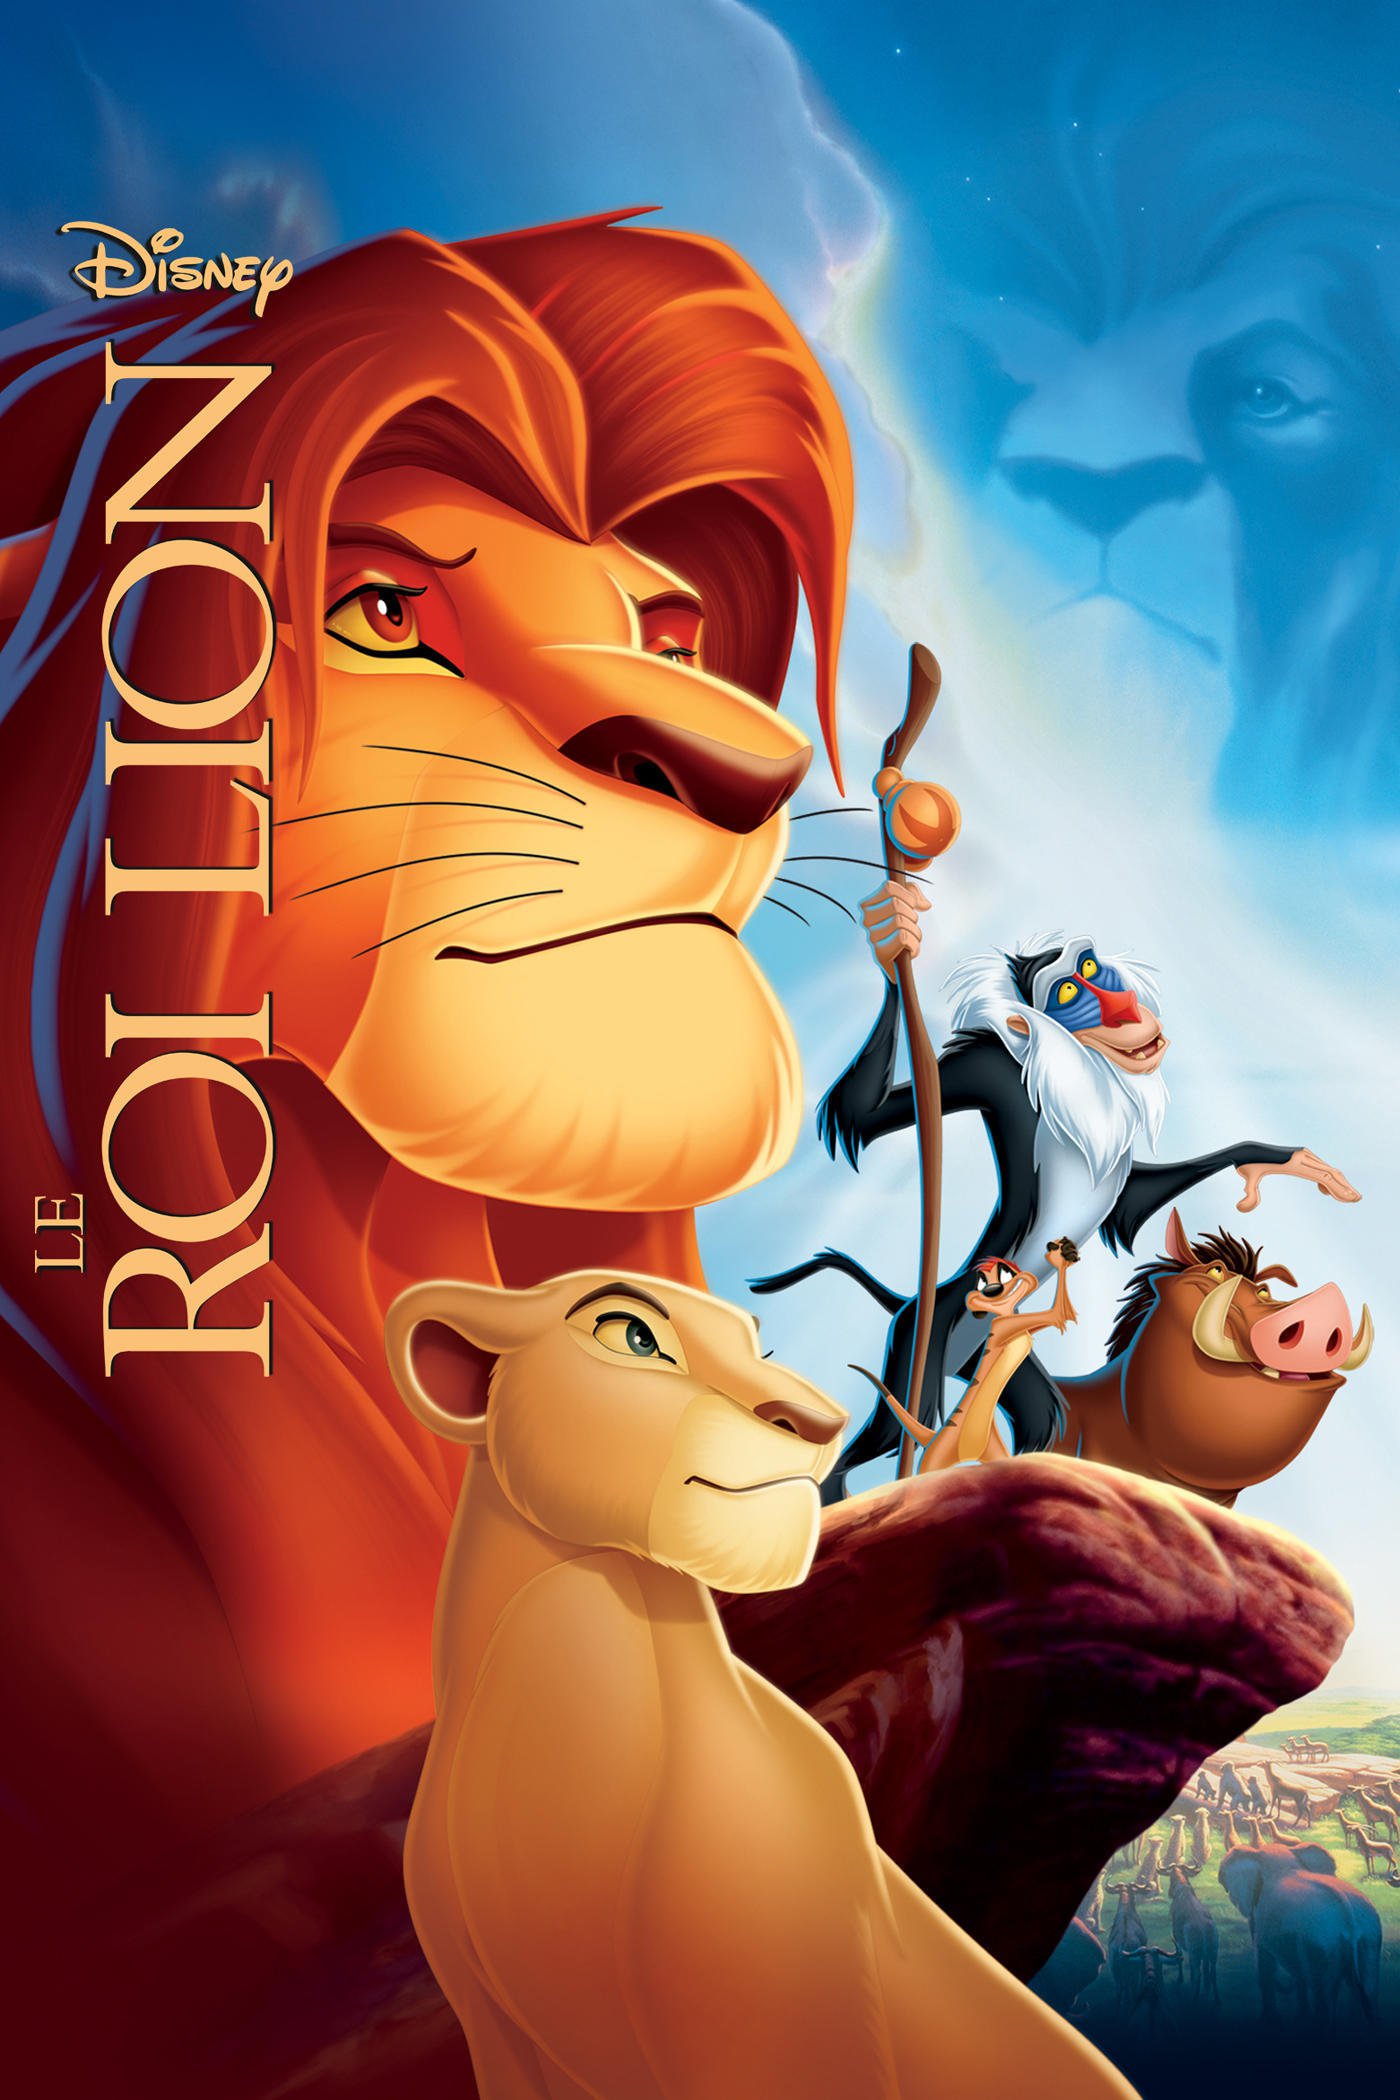 Le Roi Lion renaît en série - La suite du film culte de Disney